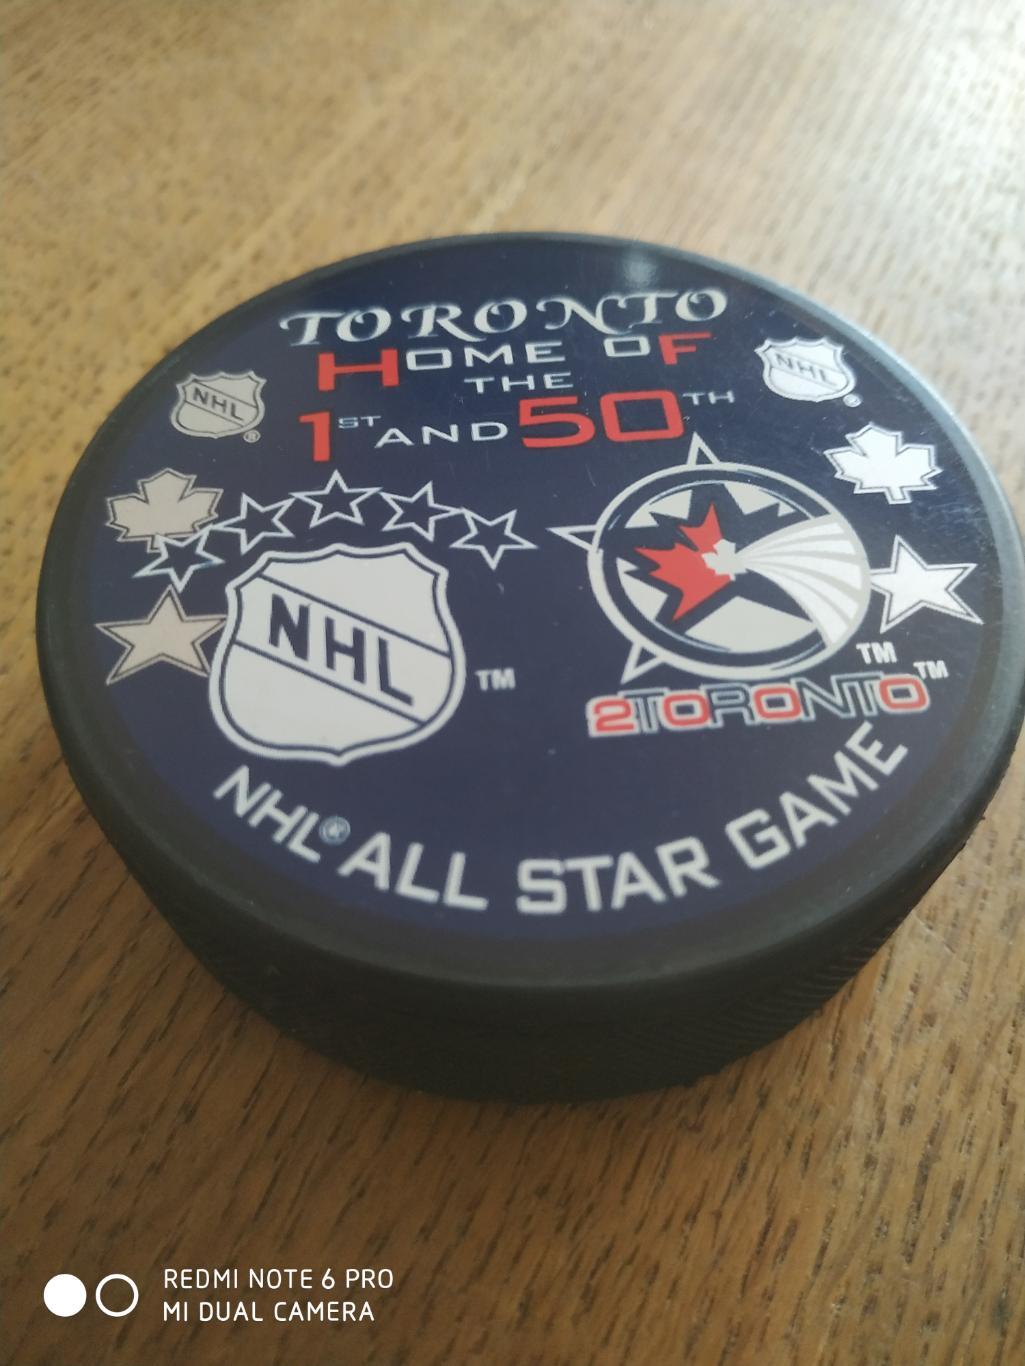 ШАЙБА ХОККЕЙНАЯ НХЛ NHL 2000 TORONTO HOME OF THE 1ST AND 50TH NHL ALL STAR GAME